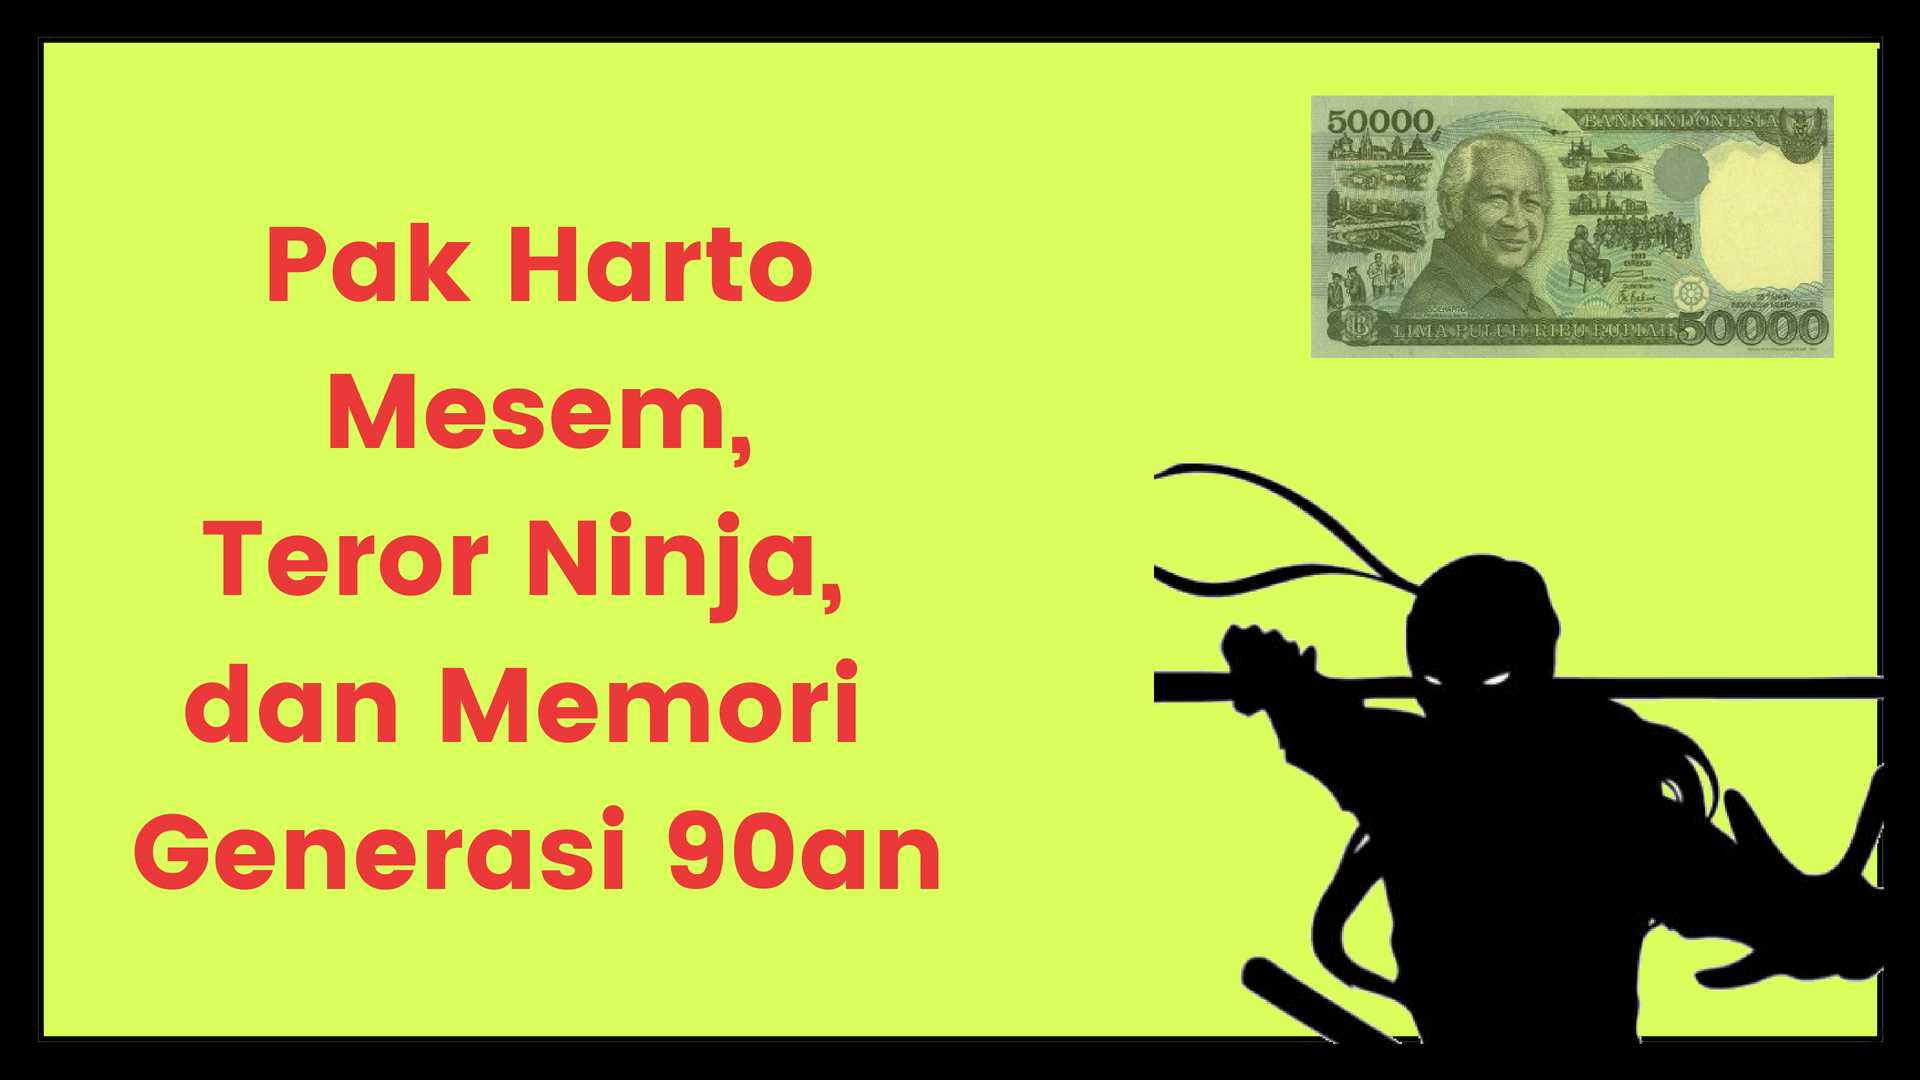 Pak Harto Mesem Teror Ninja dan Memori Generasi 90 an oleh Ikrom Zain Halaman all Kompasiana